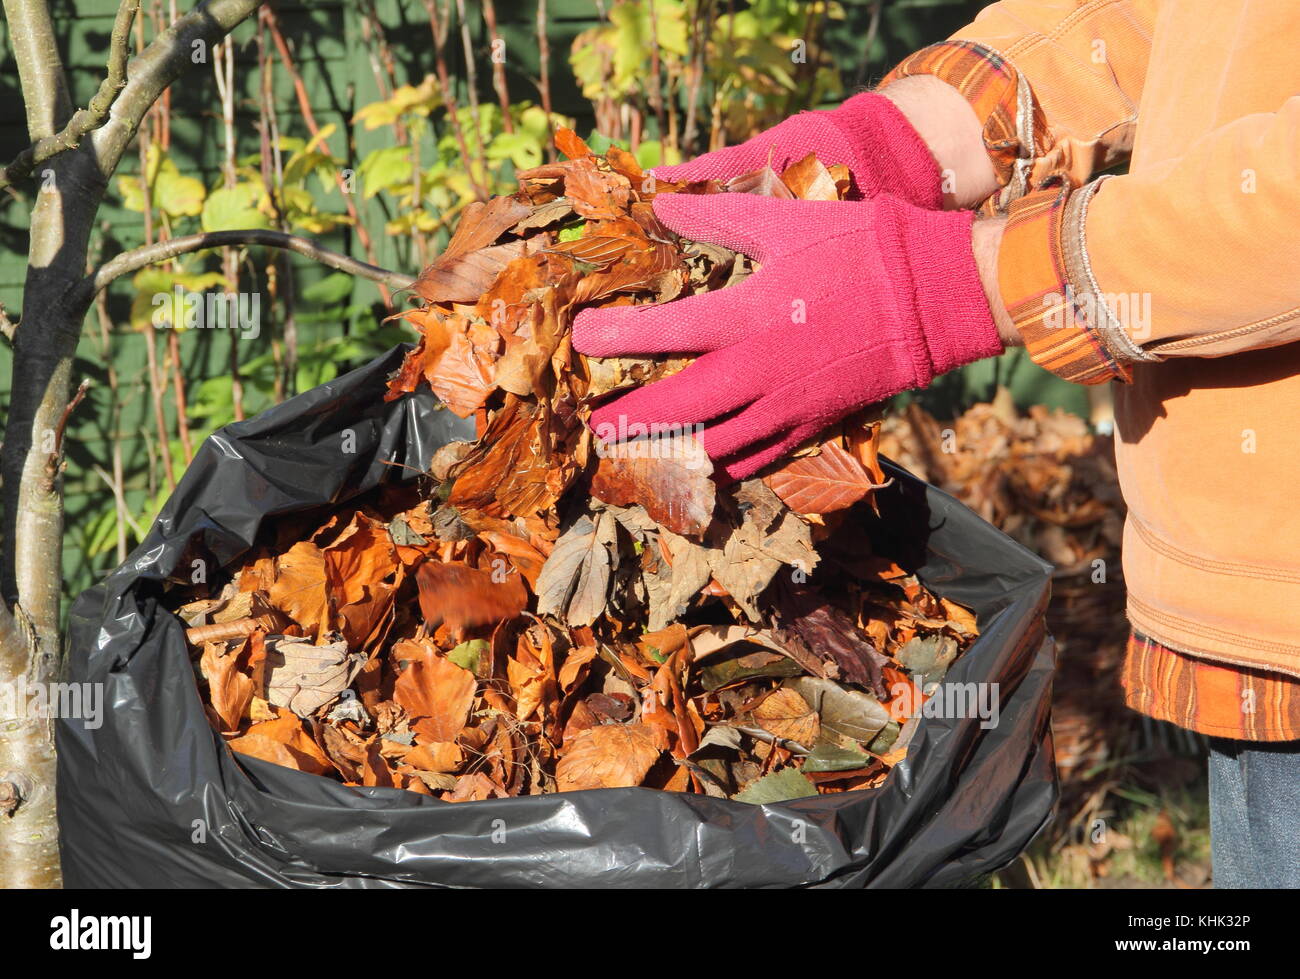 Abgefallene Blätter sind in eine schwarze Plastiktüte verpackt Blattform im späten Herbst/Winter (November), im Englischen Garten, Großbritannien Stockfoto